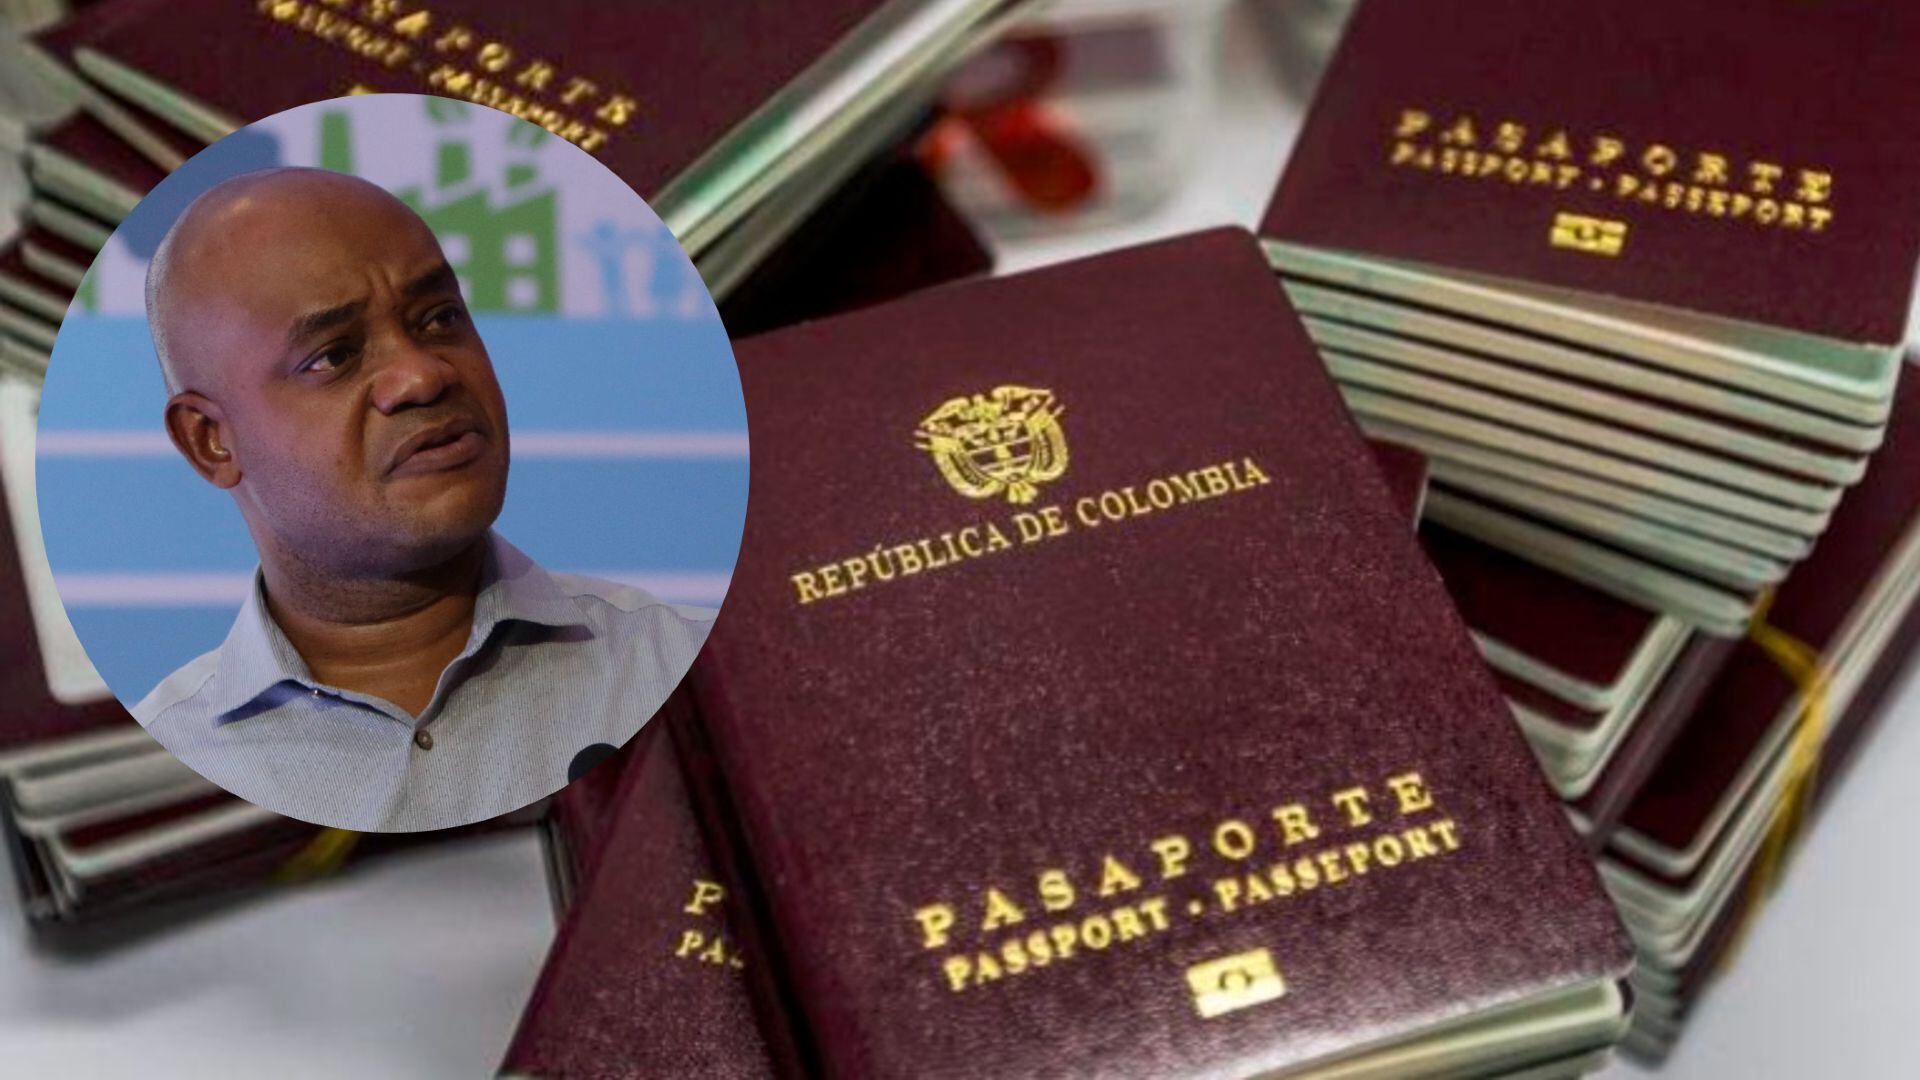 Pasaportes Colombia |  crédito Colprensa/Ricardo Maldonado/EFE